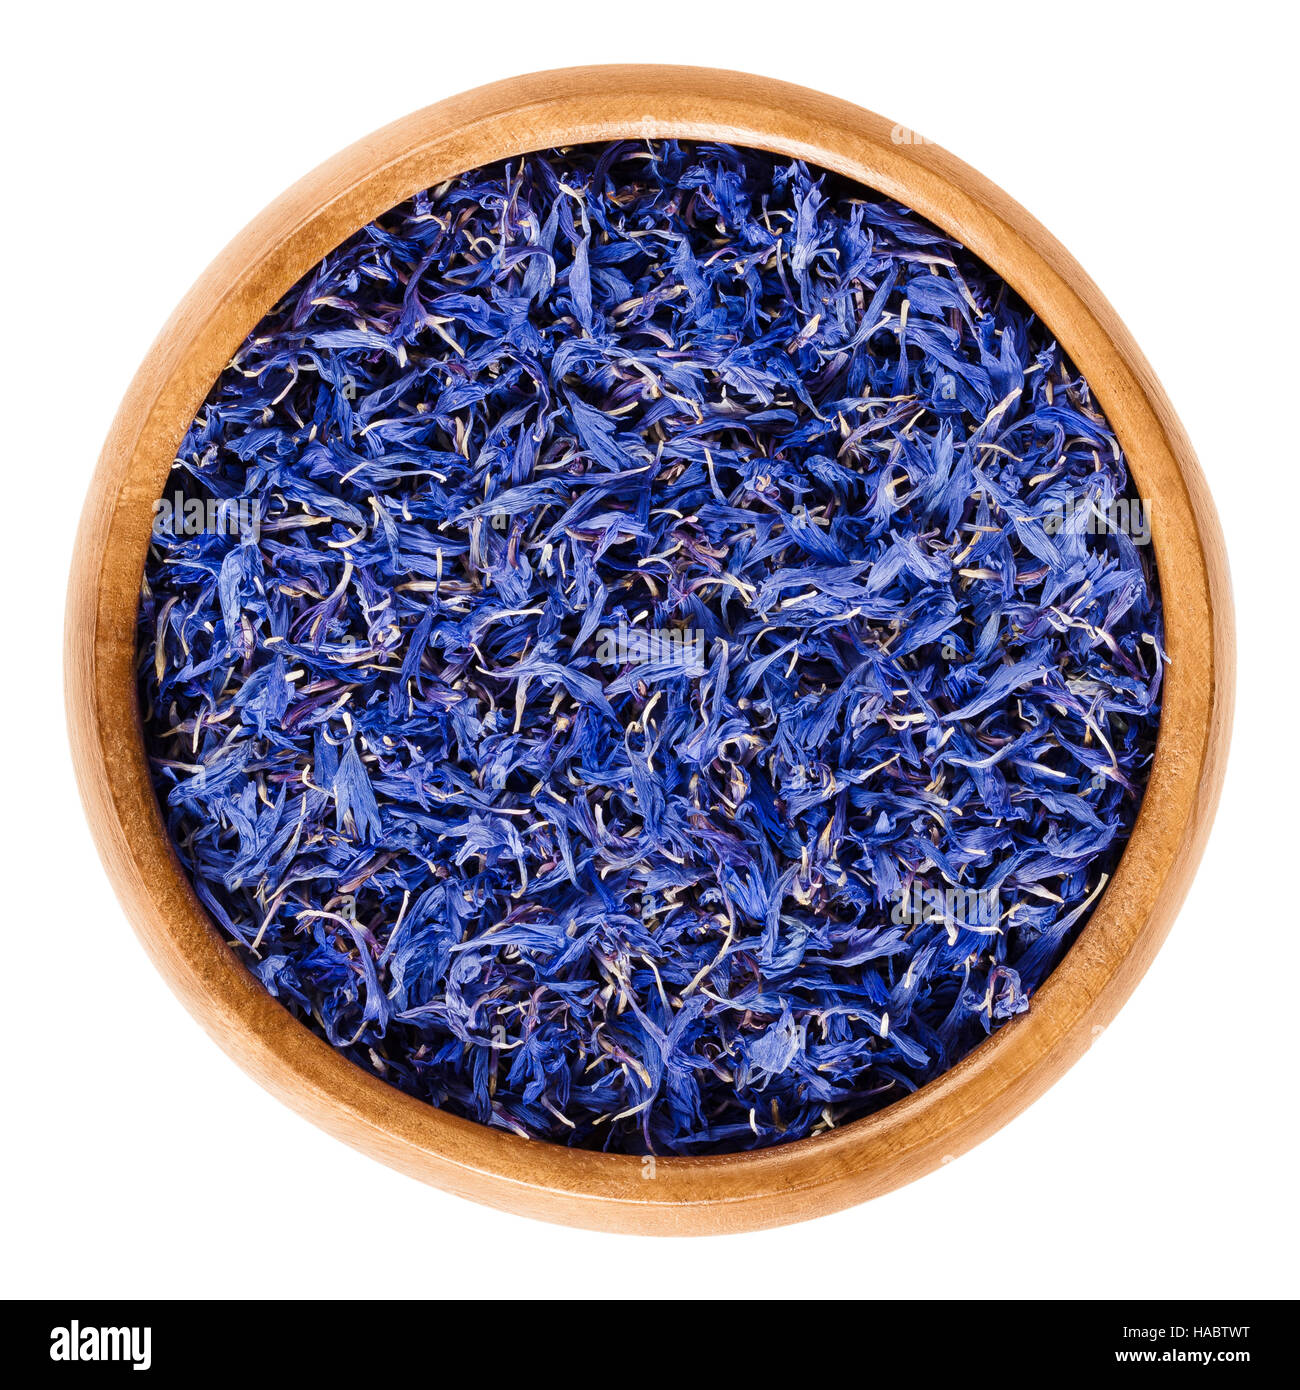 Essiccato cornflowers in ciotola di legno. Fiori commestibili di Centaurea cyanus con intensa pigmento blu, utilizzato per preparare il tè e insalate. Foto Stock